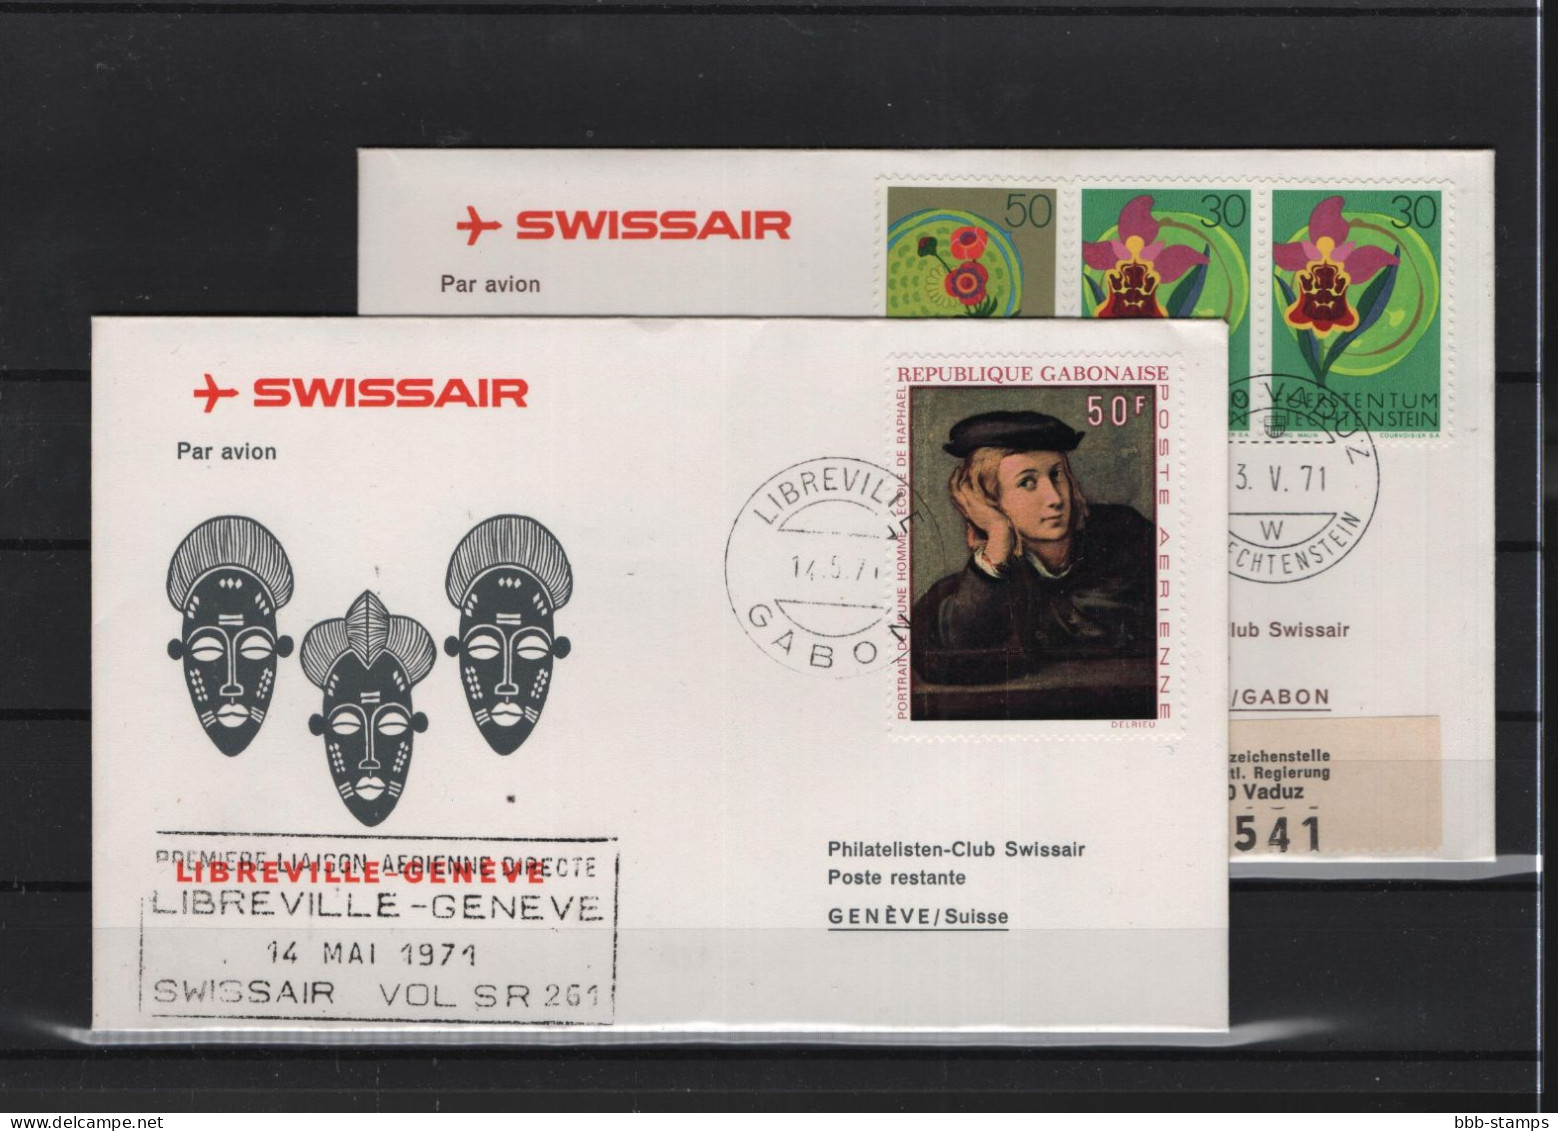 Schweiz Luftpost FFC Swissair 15.5.1971 Genf  Libreville VV - Primi Voli